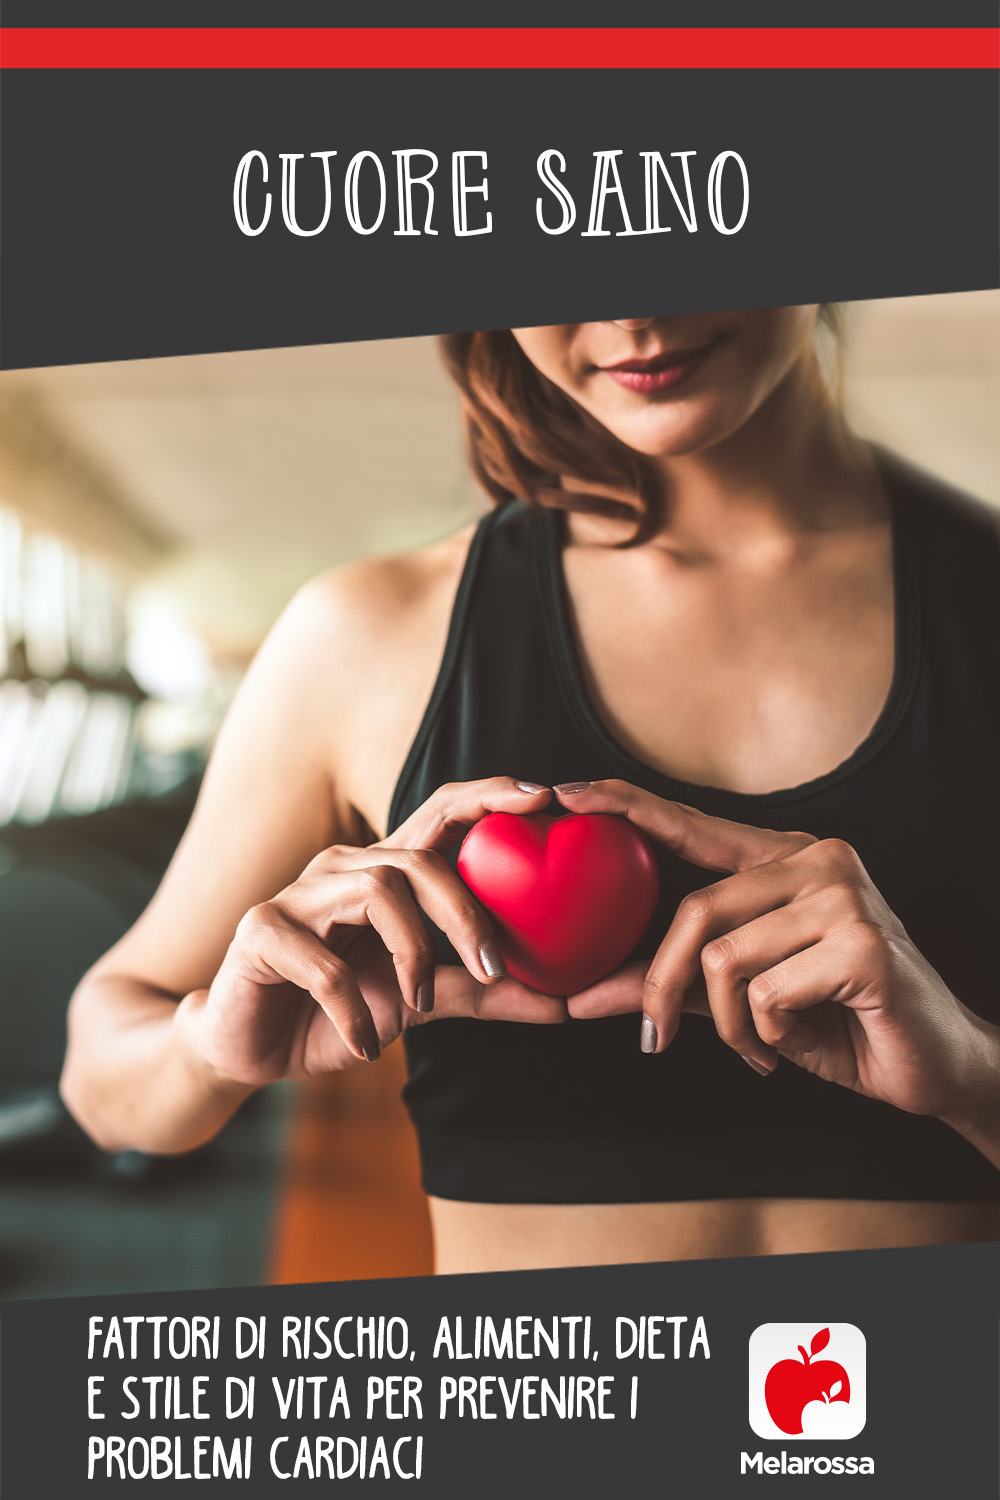 cuore sano: fattori di rischio, alimentazione, cibi dieta per prevenire i problemi cardiaci